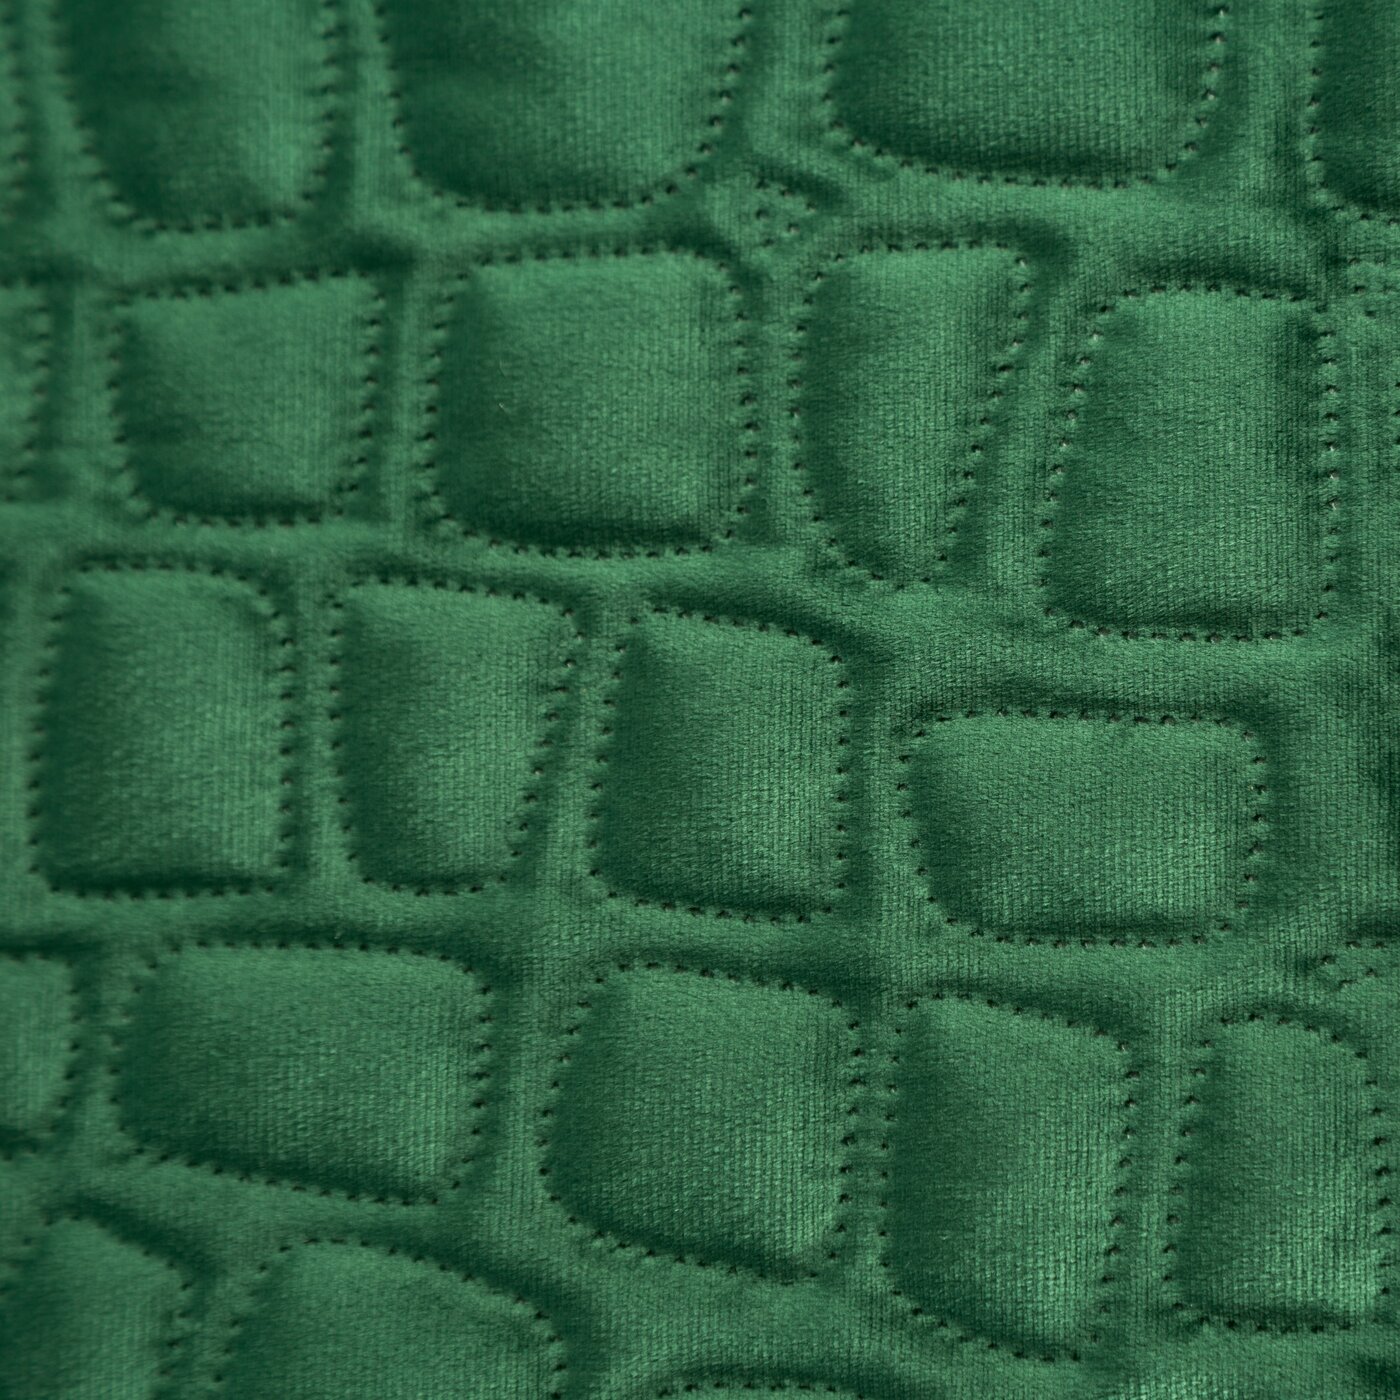 Cuvertură de Pat cu motiv de crocodil presat la cald verde închis Colecția Limitată Salvia 7 Perdele de Poveste